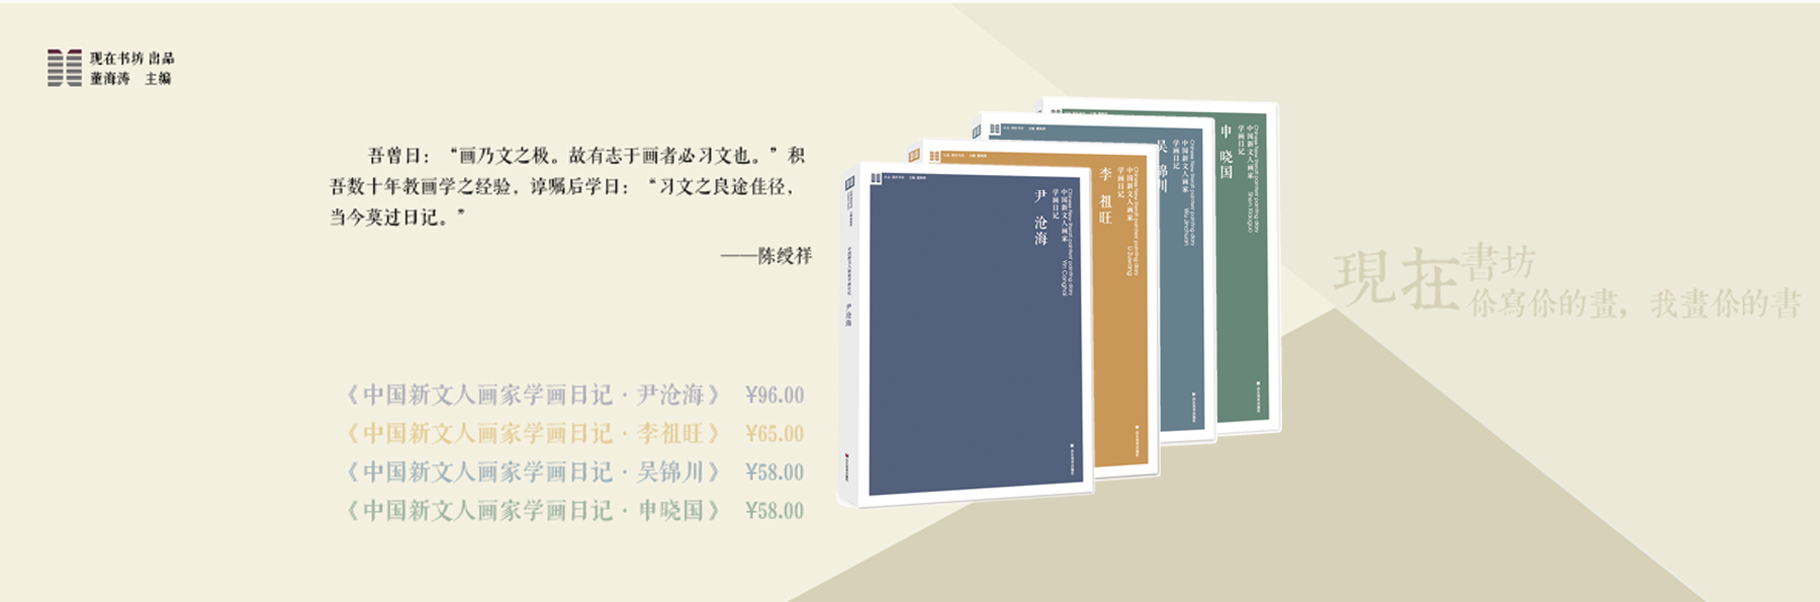 《中国新文人画家学画日记》系列图书正式出版，敬请关注！